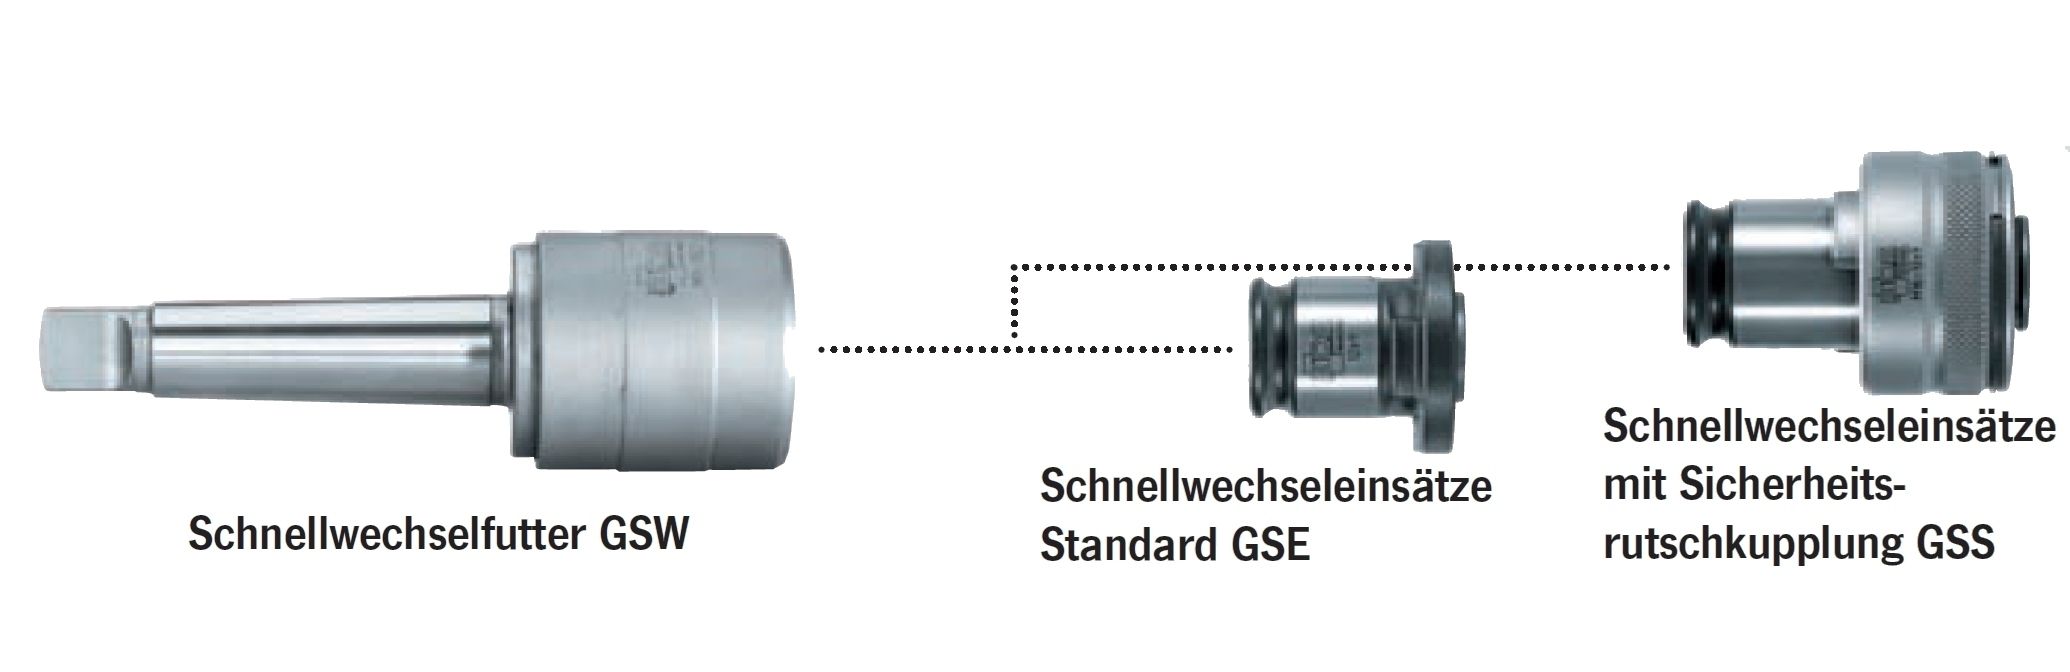 Gewinde-Schnellwechselfutter GSW 332 - MK3 | Größe 2